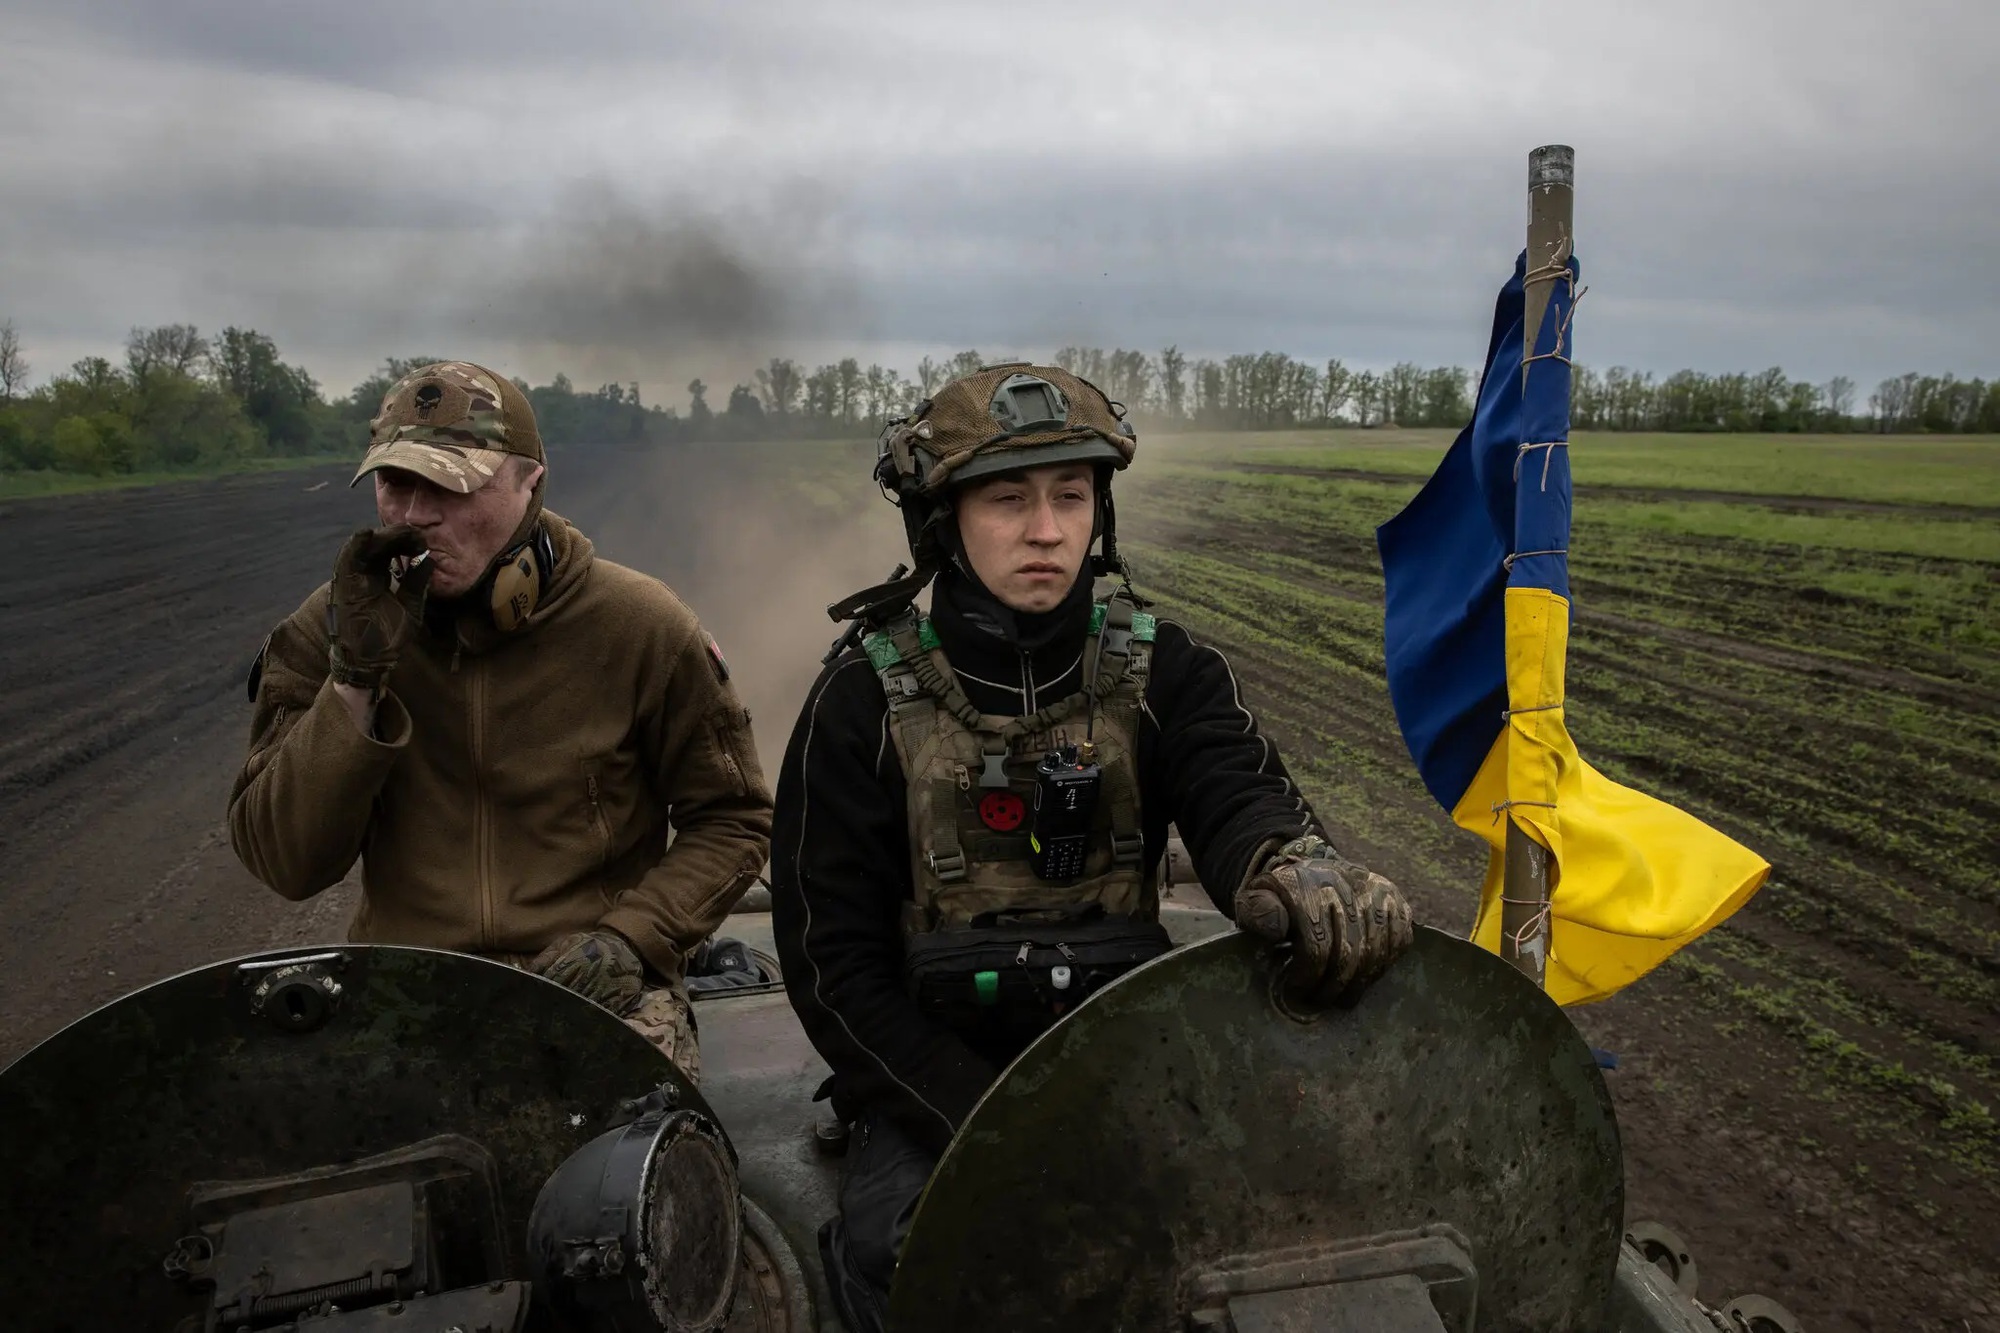 Phương Tây bắt đầu tỉnh ngộ sau sai lầm khuyến khích Ukraine chiến đấu đến cùng với Nga? - Ảnh 1.